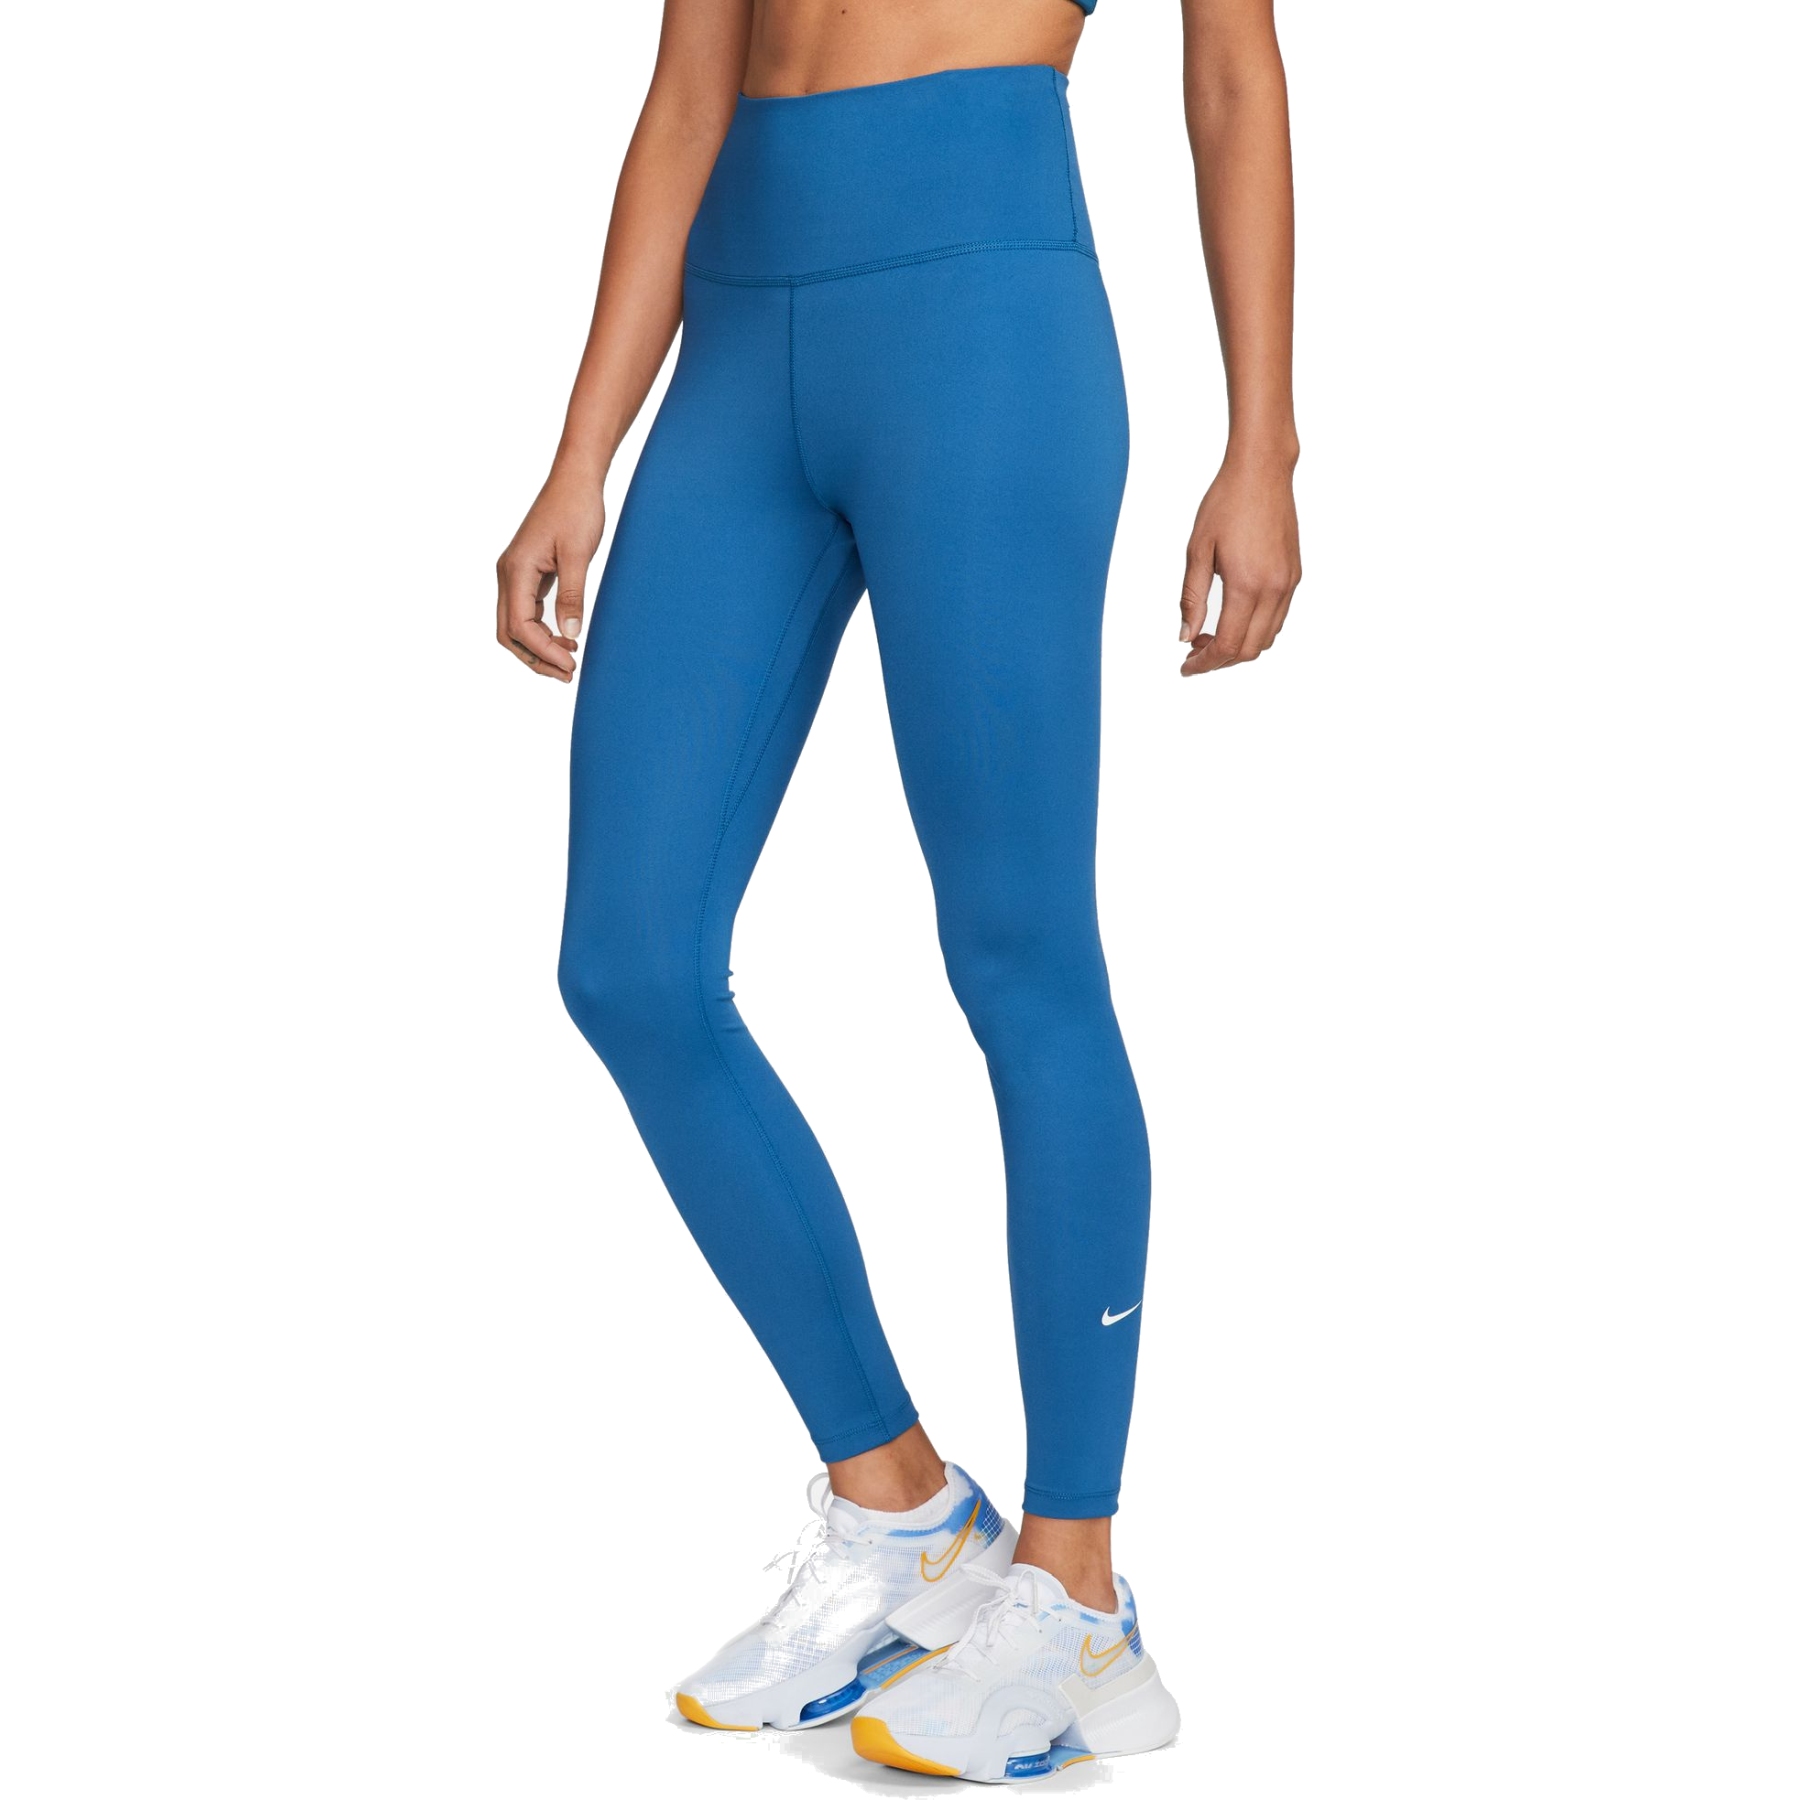 Nike Sportswear Swoosh Tights Leggings Women by Nike of (Blue